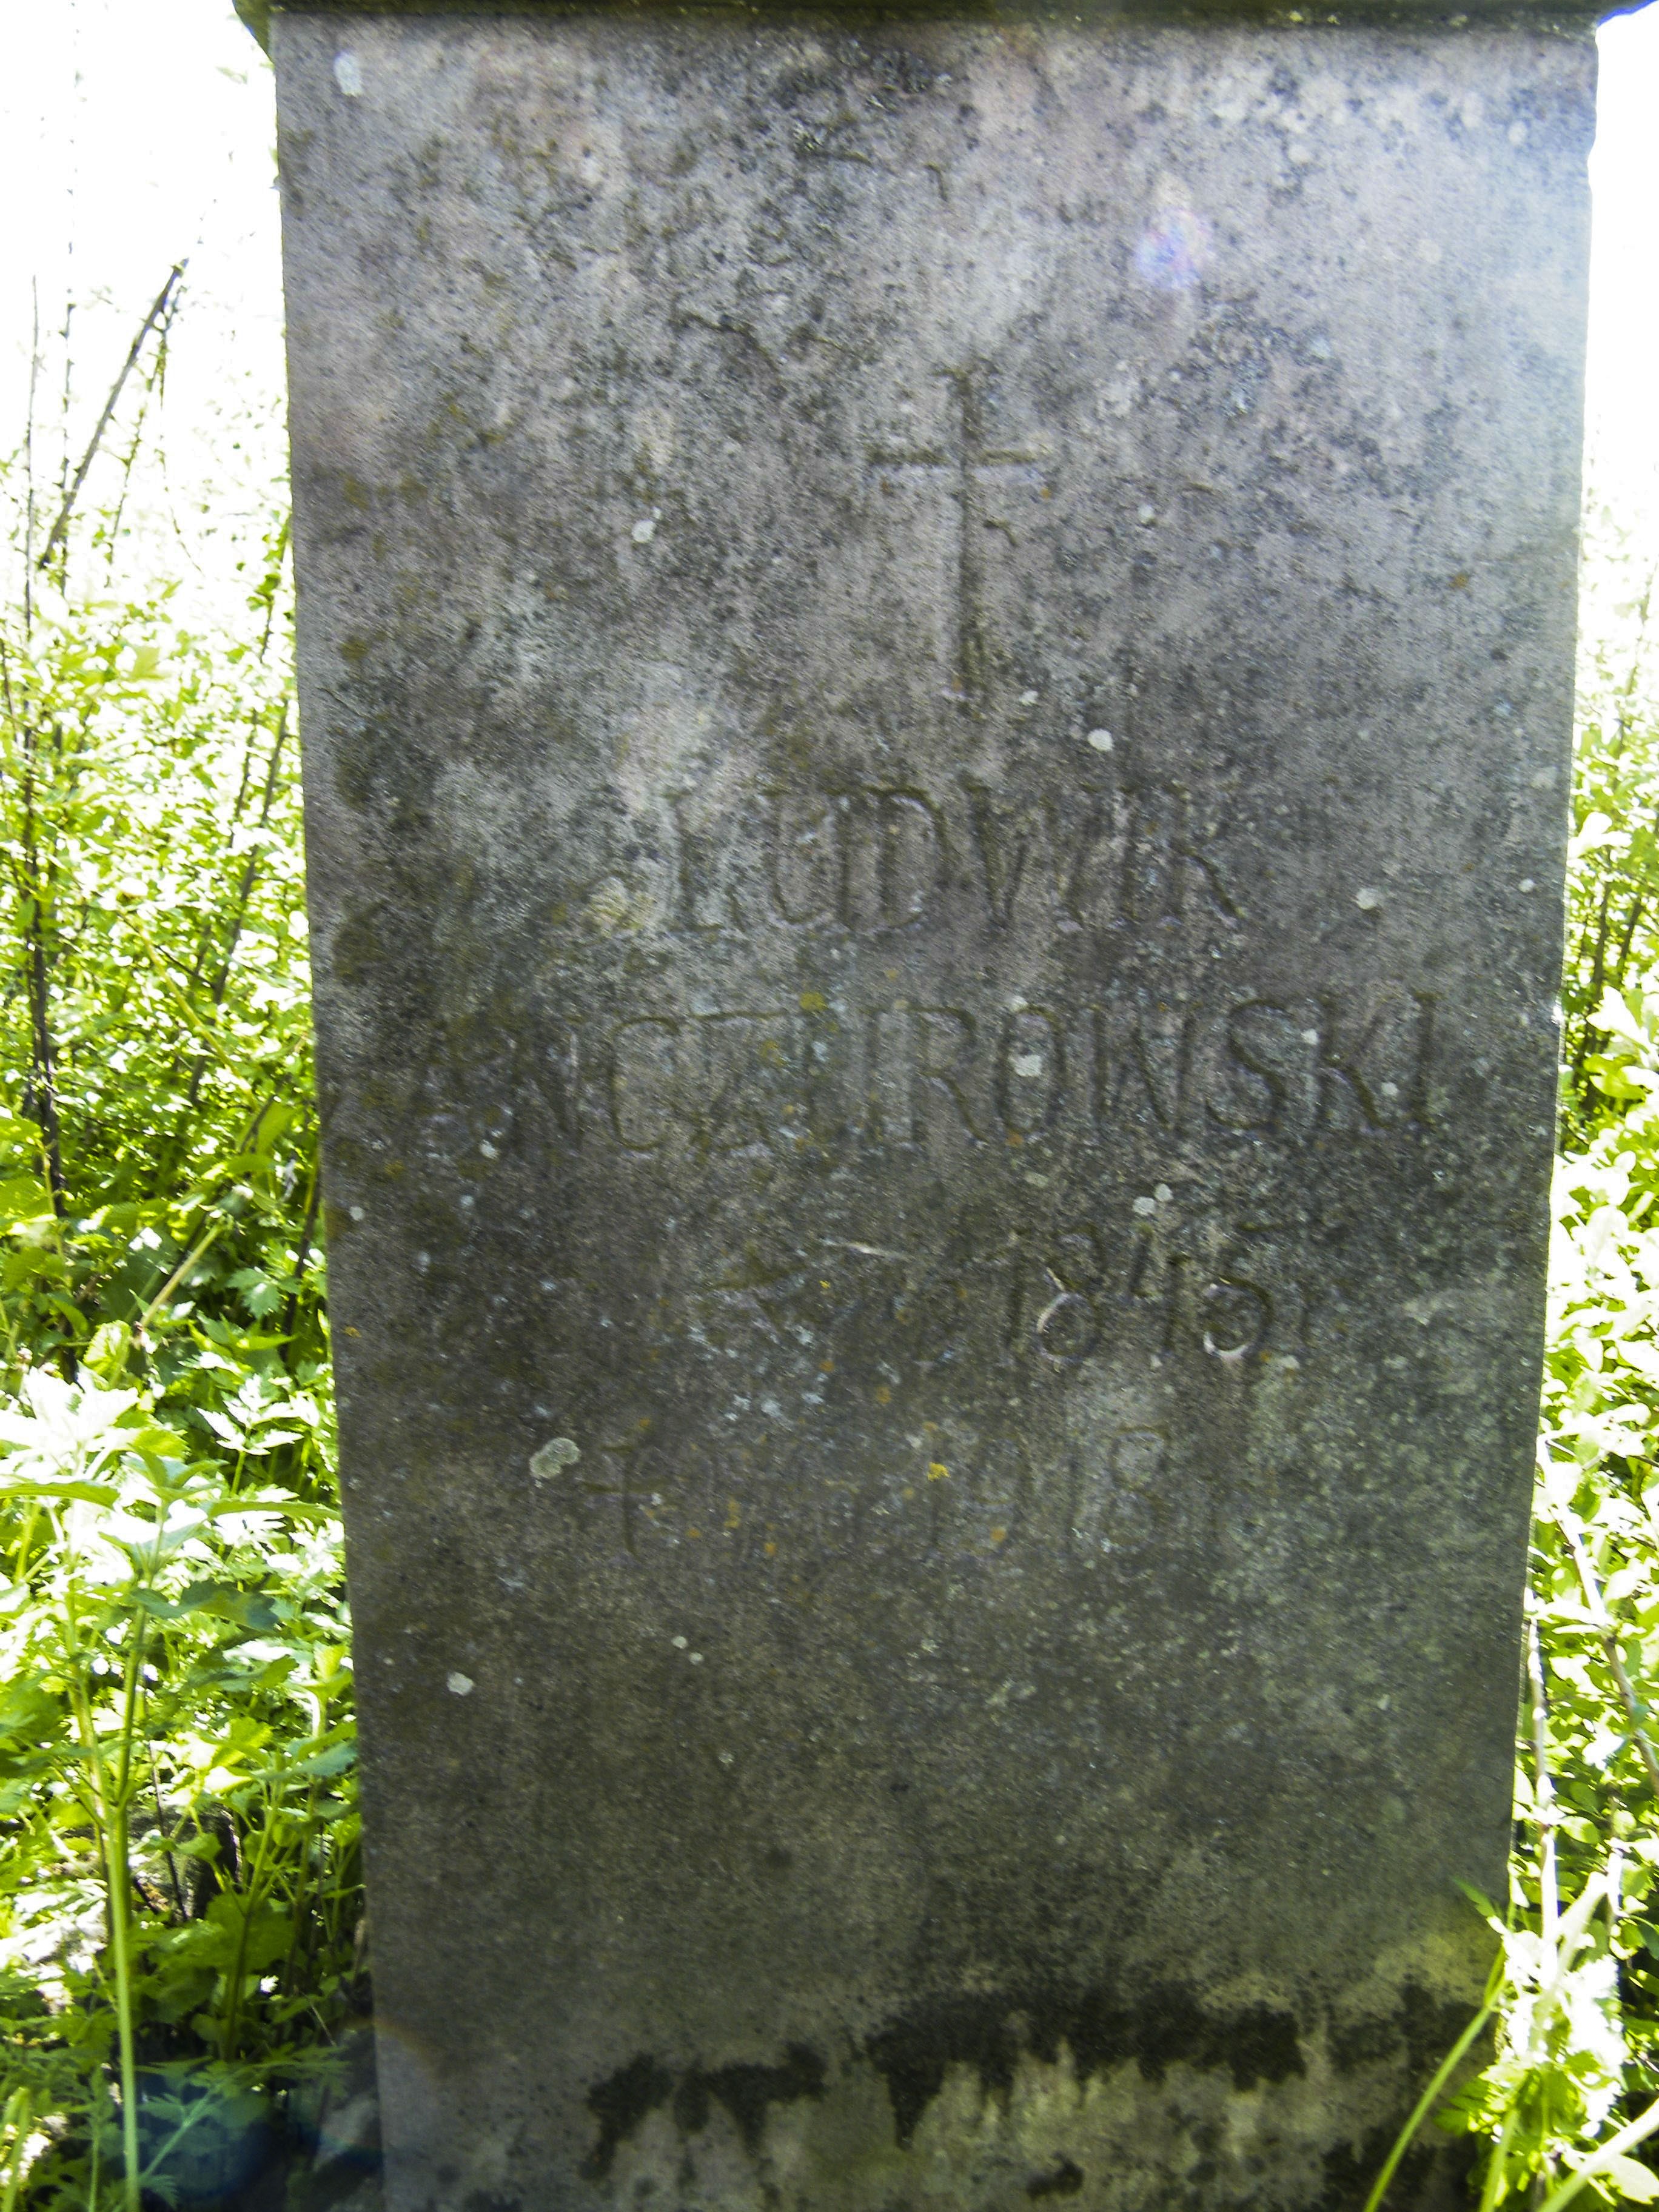 Inscription from the gravestone of Ludwik Anczorowski, cemetery in Łozowa